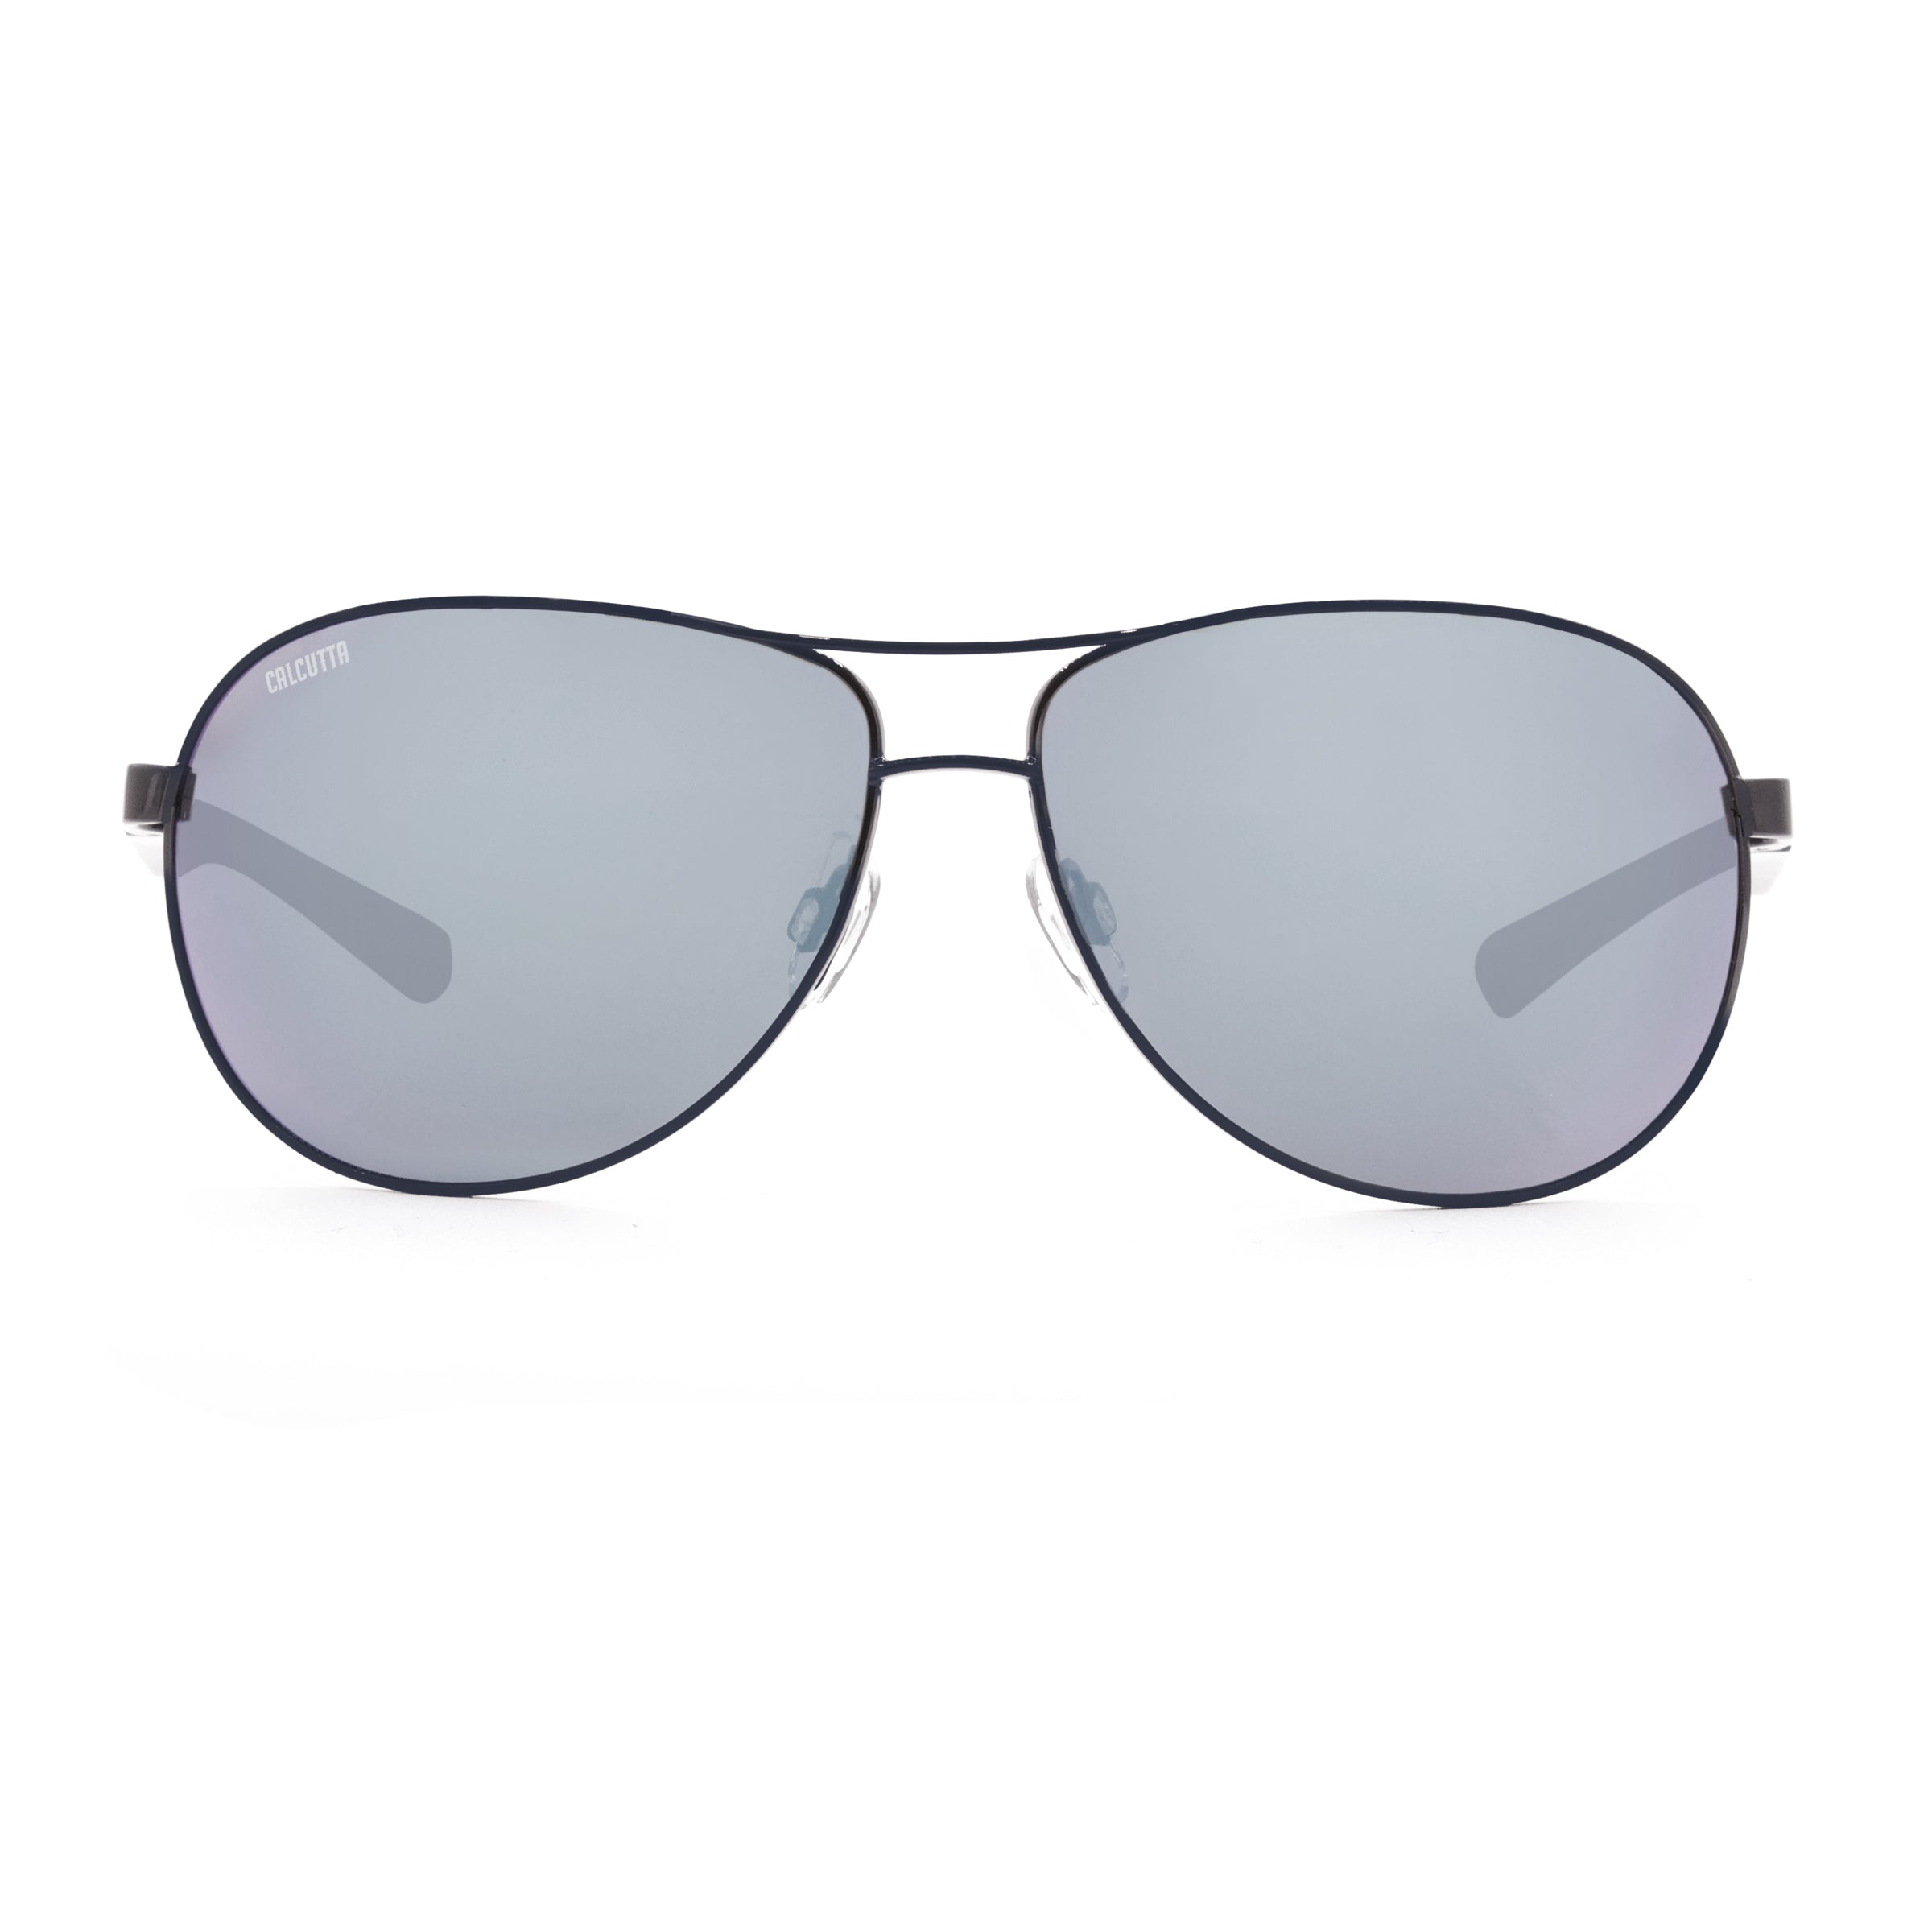 Calcutta Maverick sunglasses silver mirror front